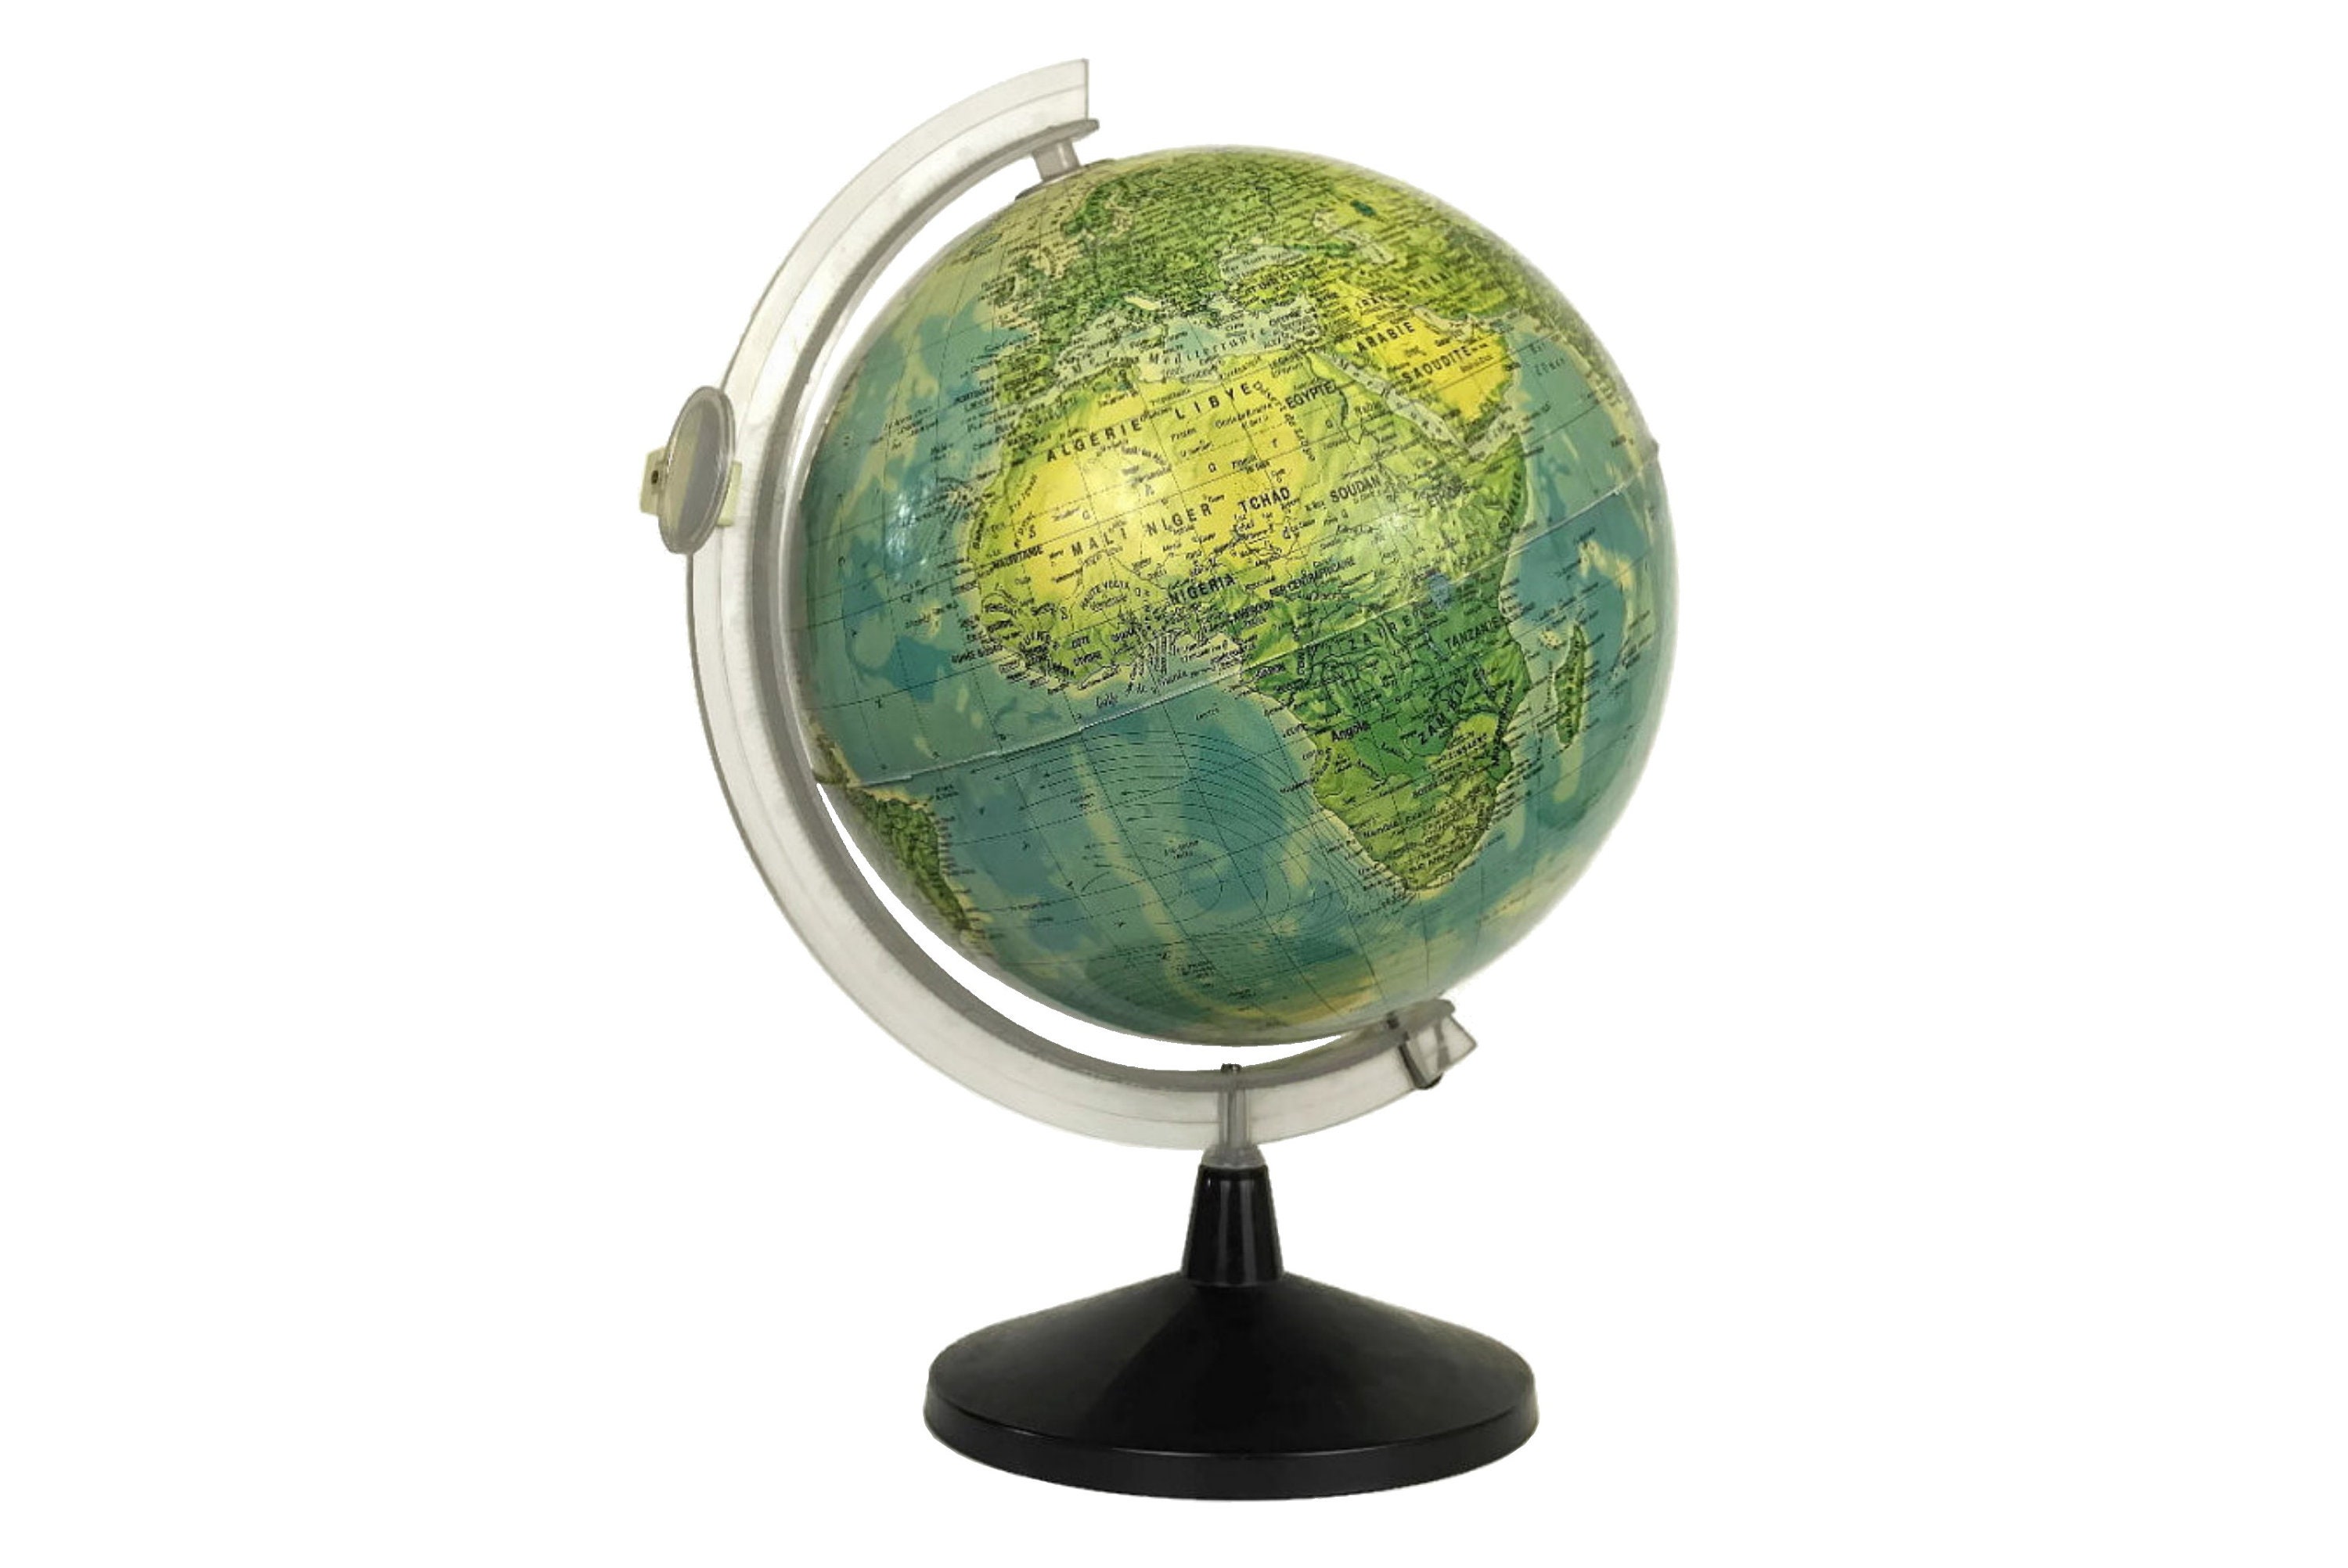 Vintage French World Globe Lamp, Illuminated Earth Map